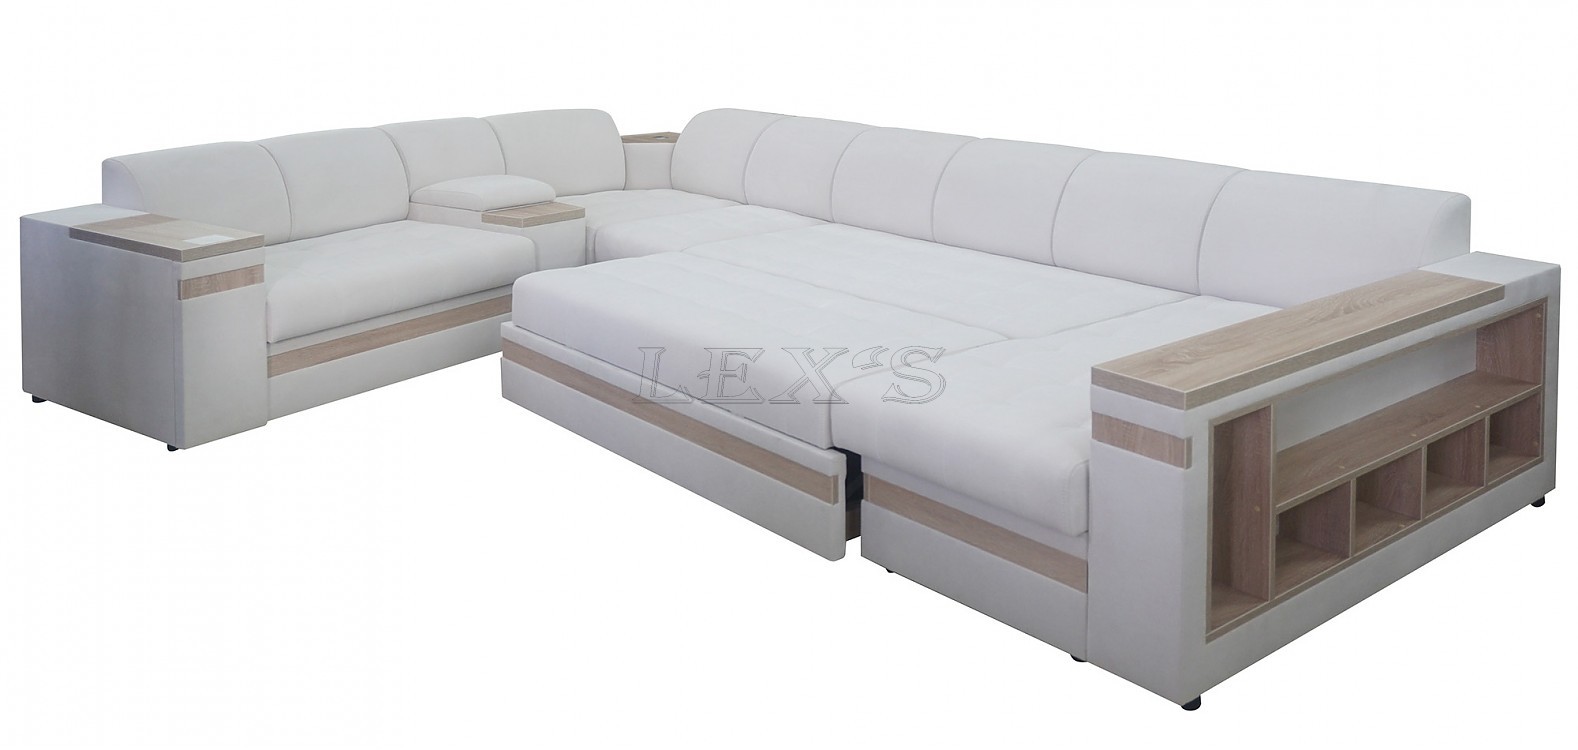 Ритис - диван п-образный модульный раскладной